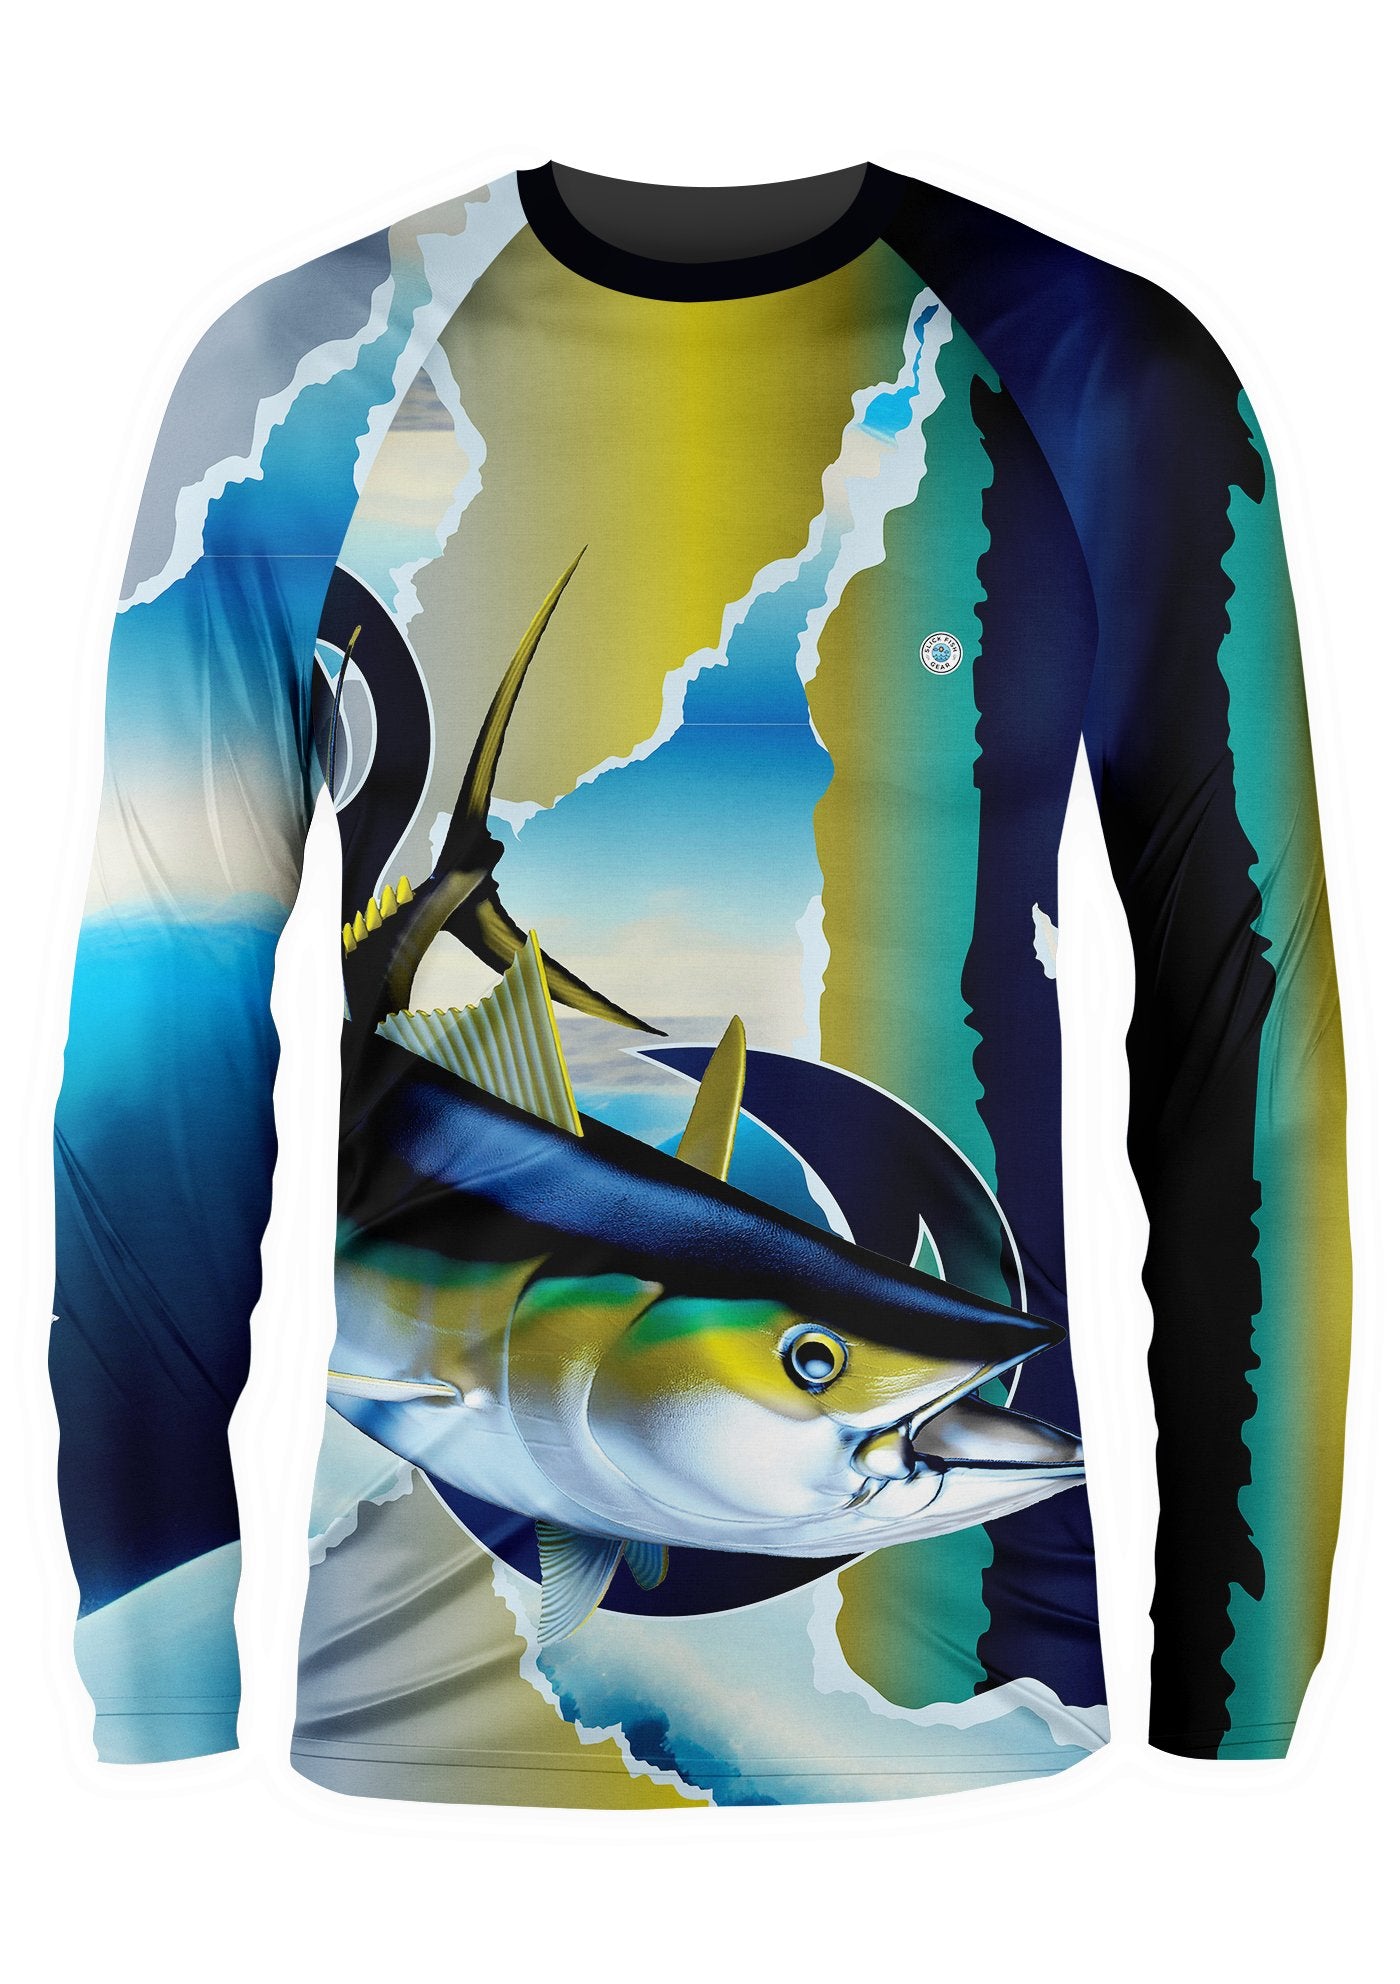 Dorado Ocean Fish UPF 50+ Long Sleeve Shirt - Slick Fish Gear Co.